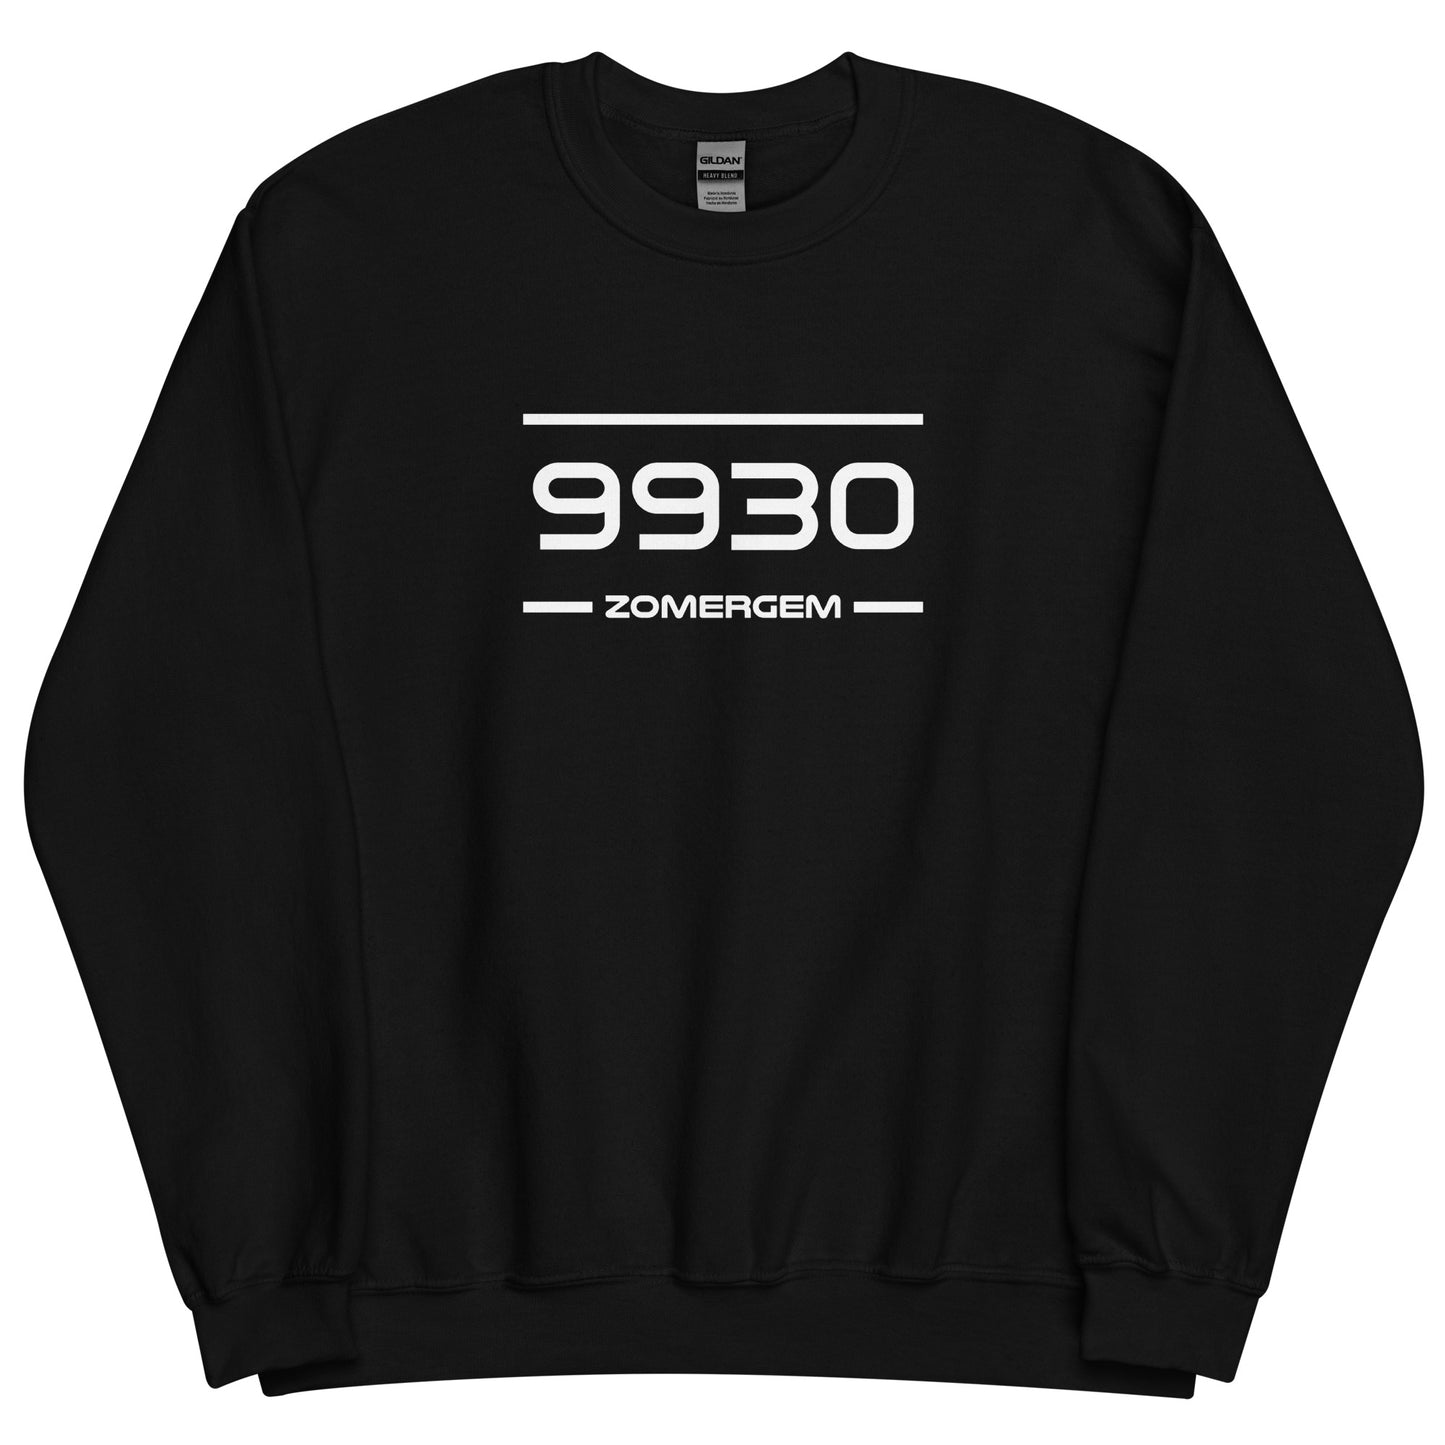 Sweater - 9930 - Zomergem (M/V)